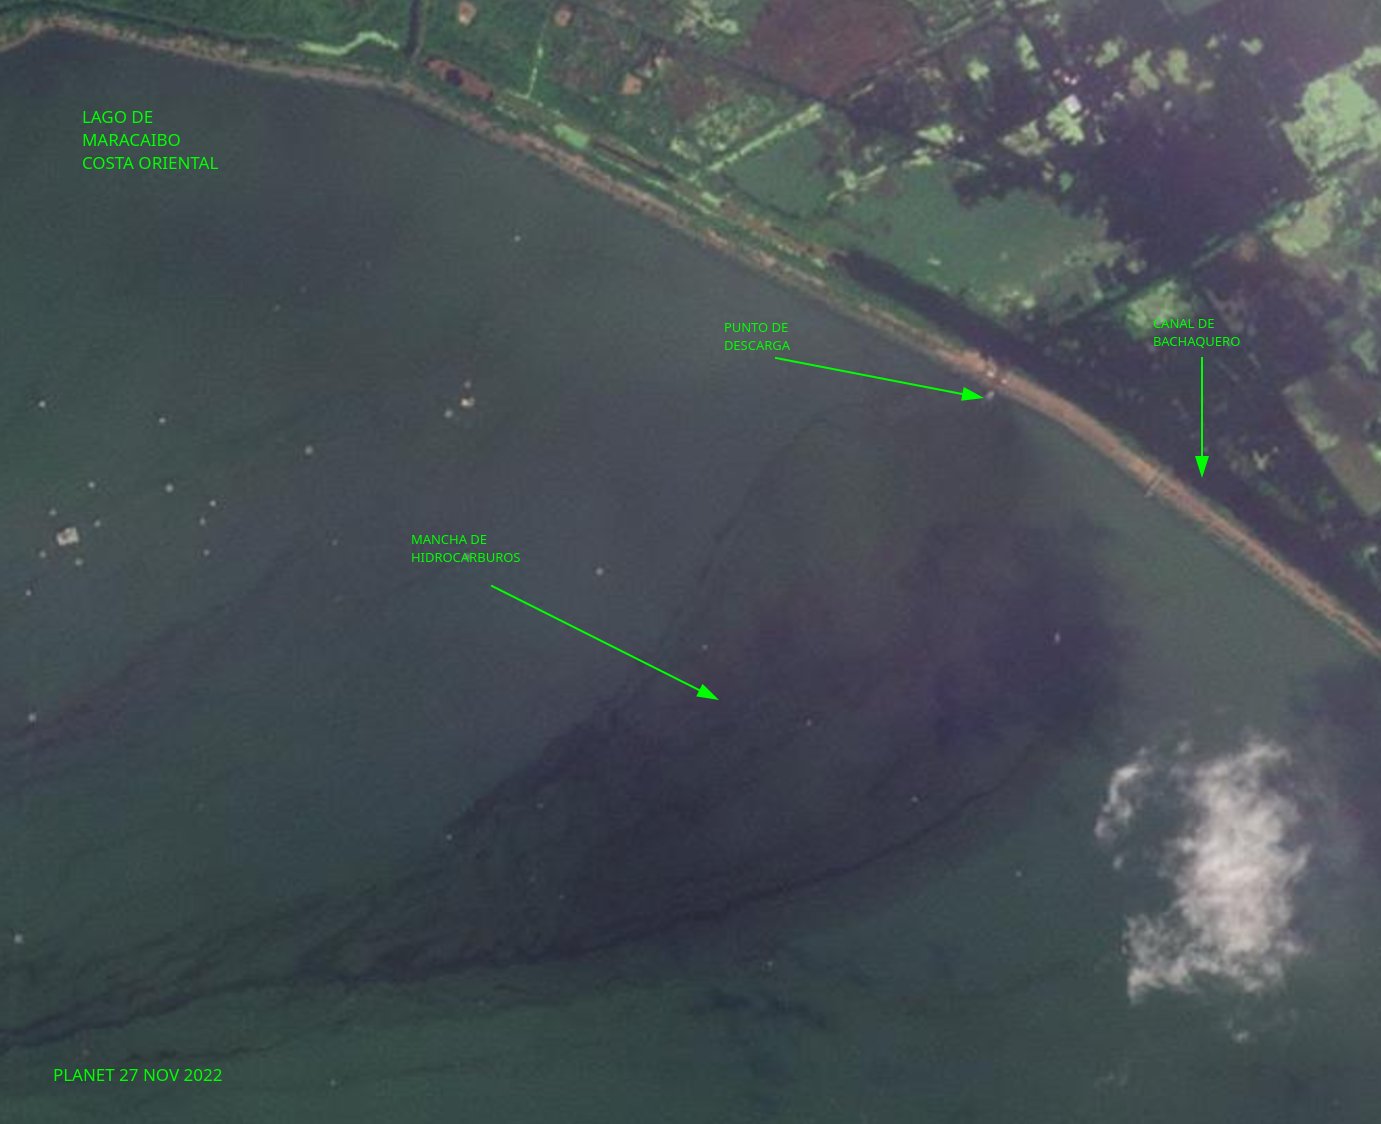 Imagen satelital de derrames petroleros en la Costa Oriental del Lago de Maracaibo. Crédito Eduardo Klein